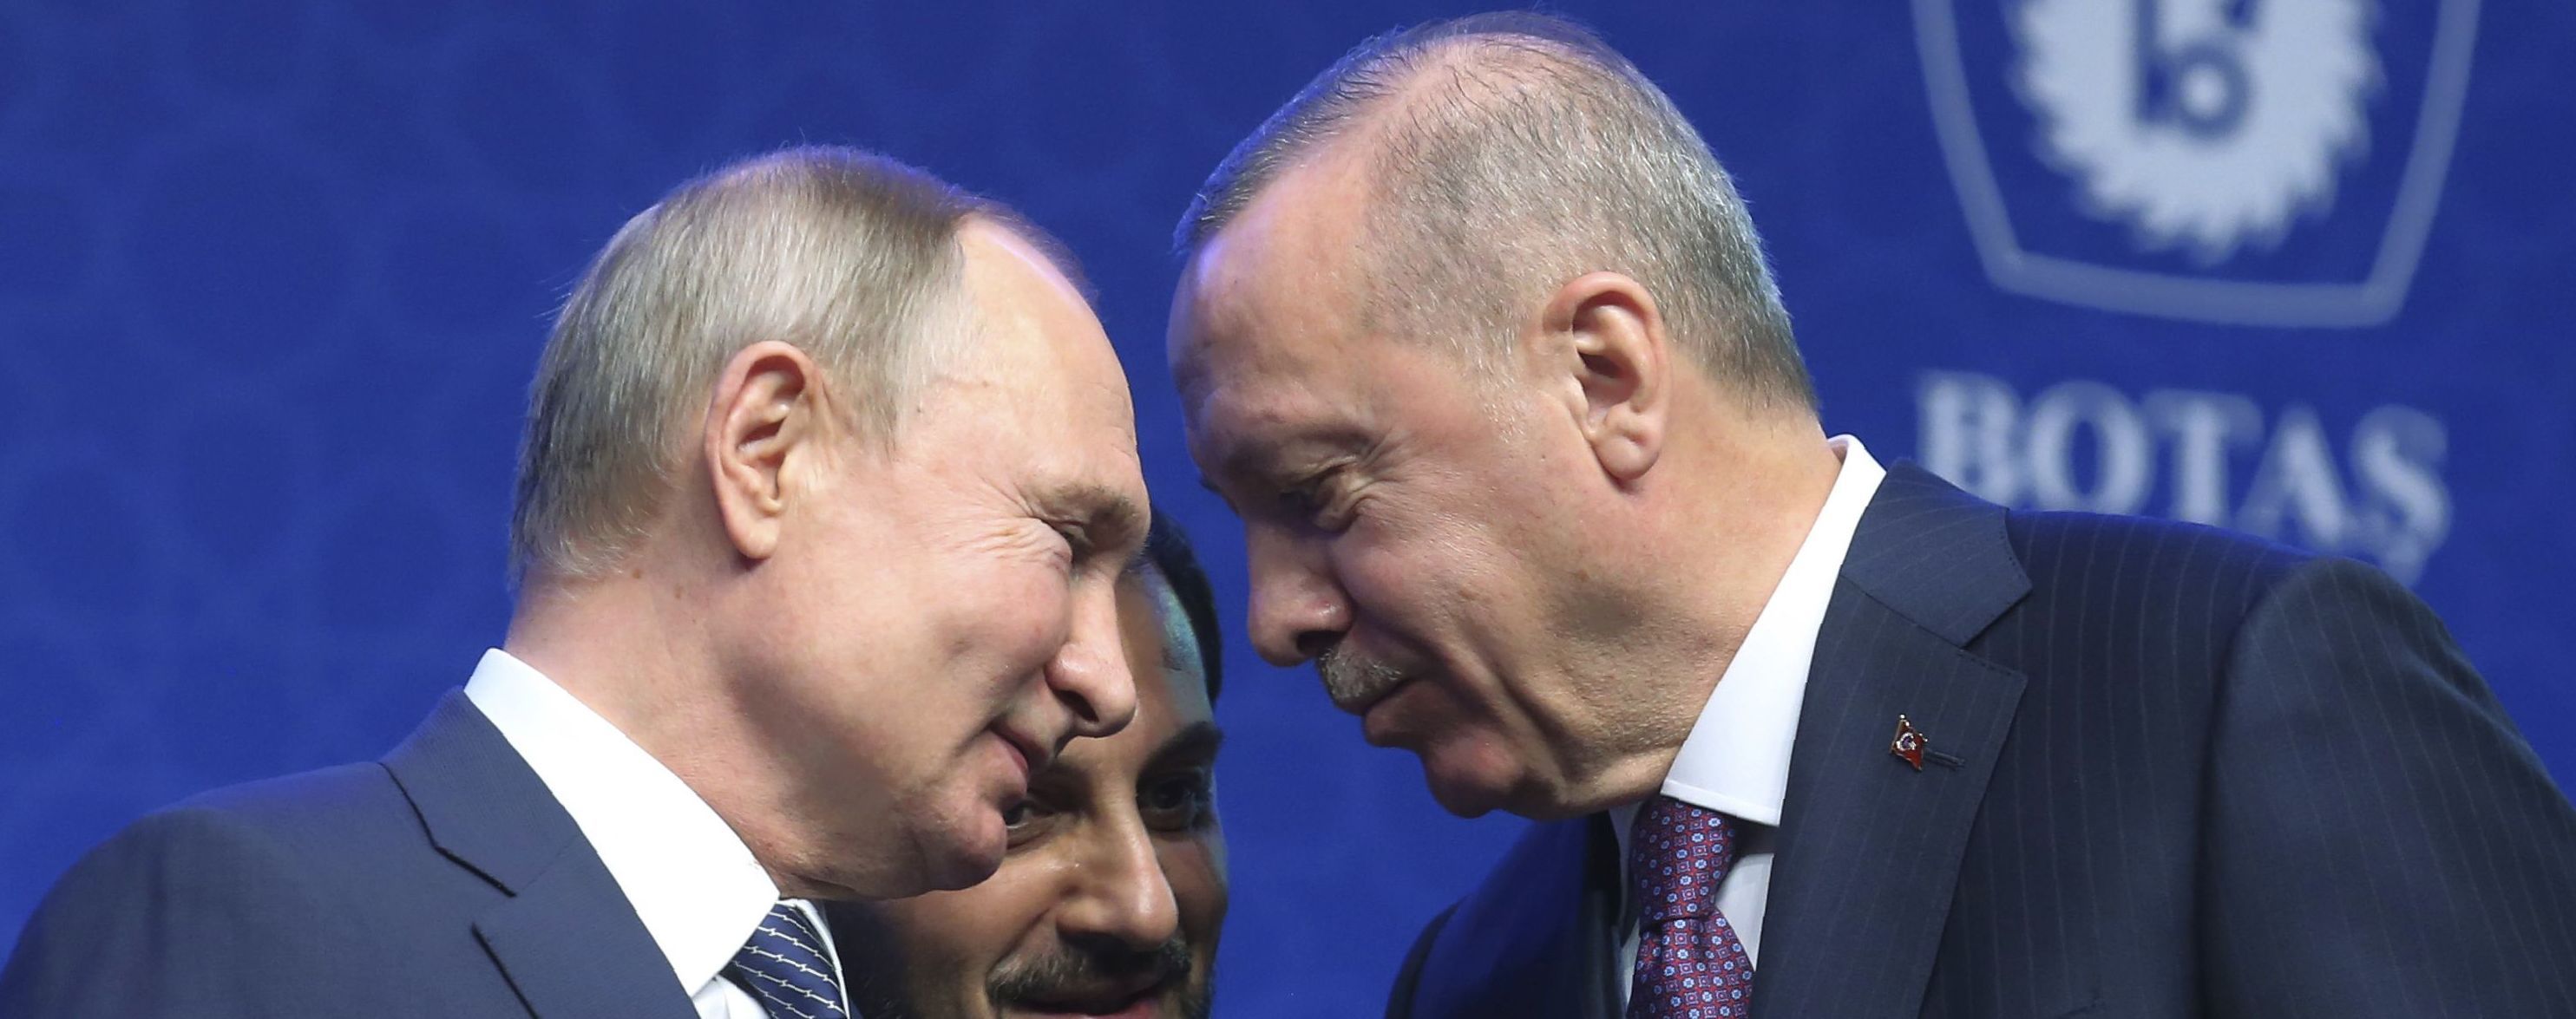 В Кремле объяснили, при каких условиях Путин готов поехать в Турцию на встречу с Эрдоганом